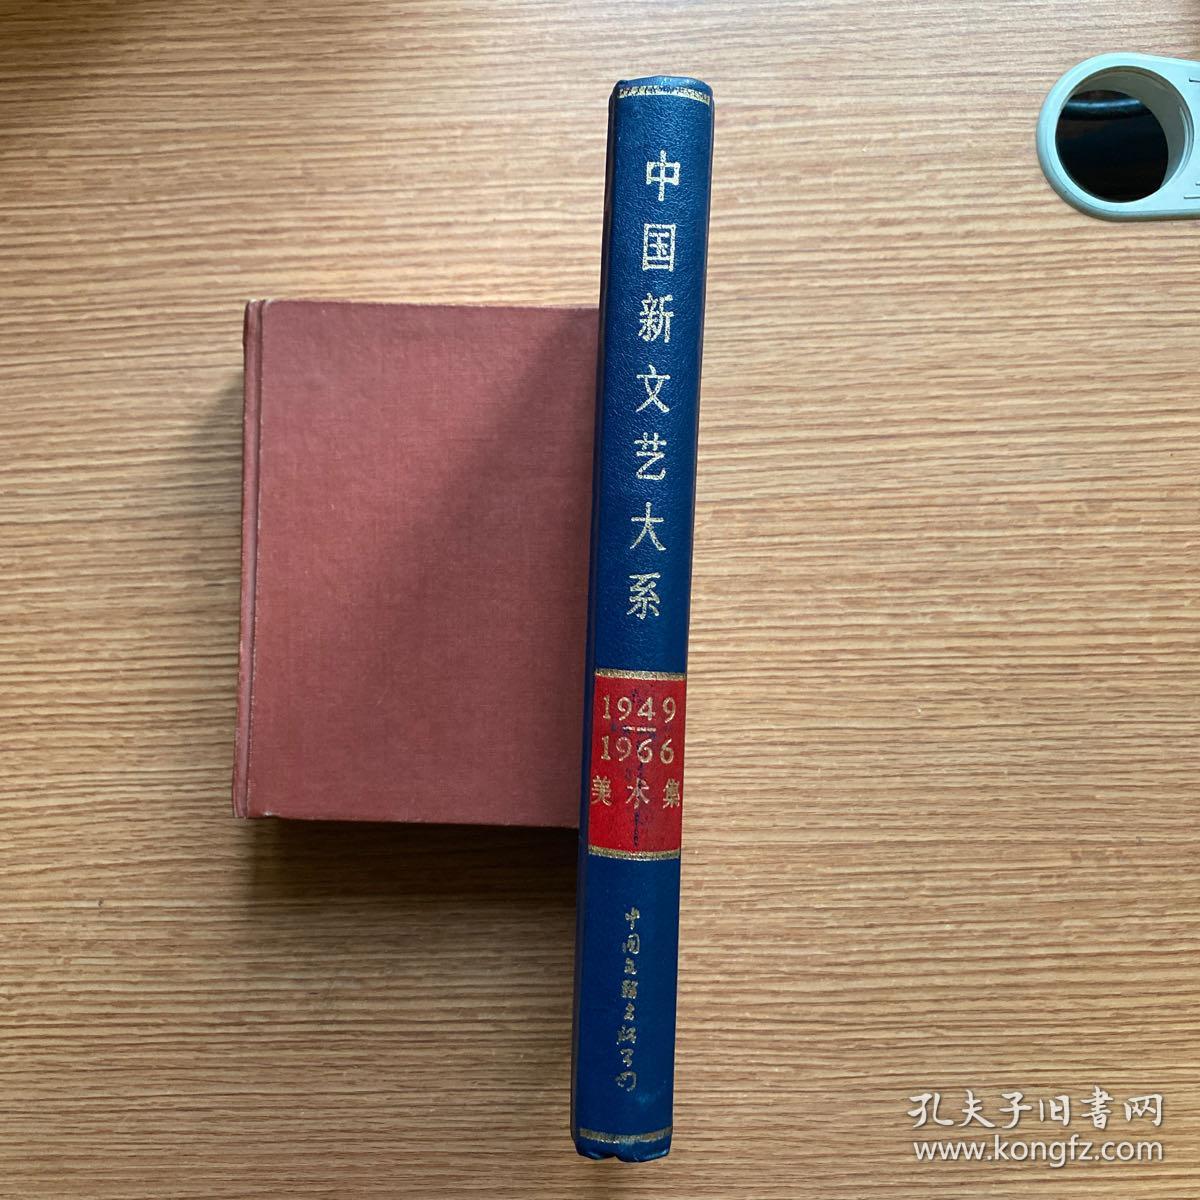 《中国新文艺大系》（1949-1966）美术集